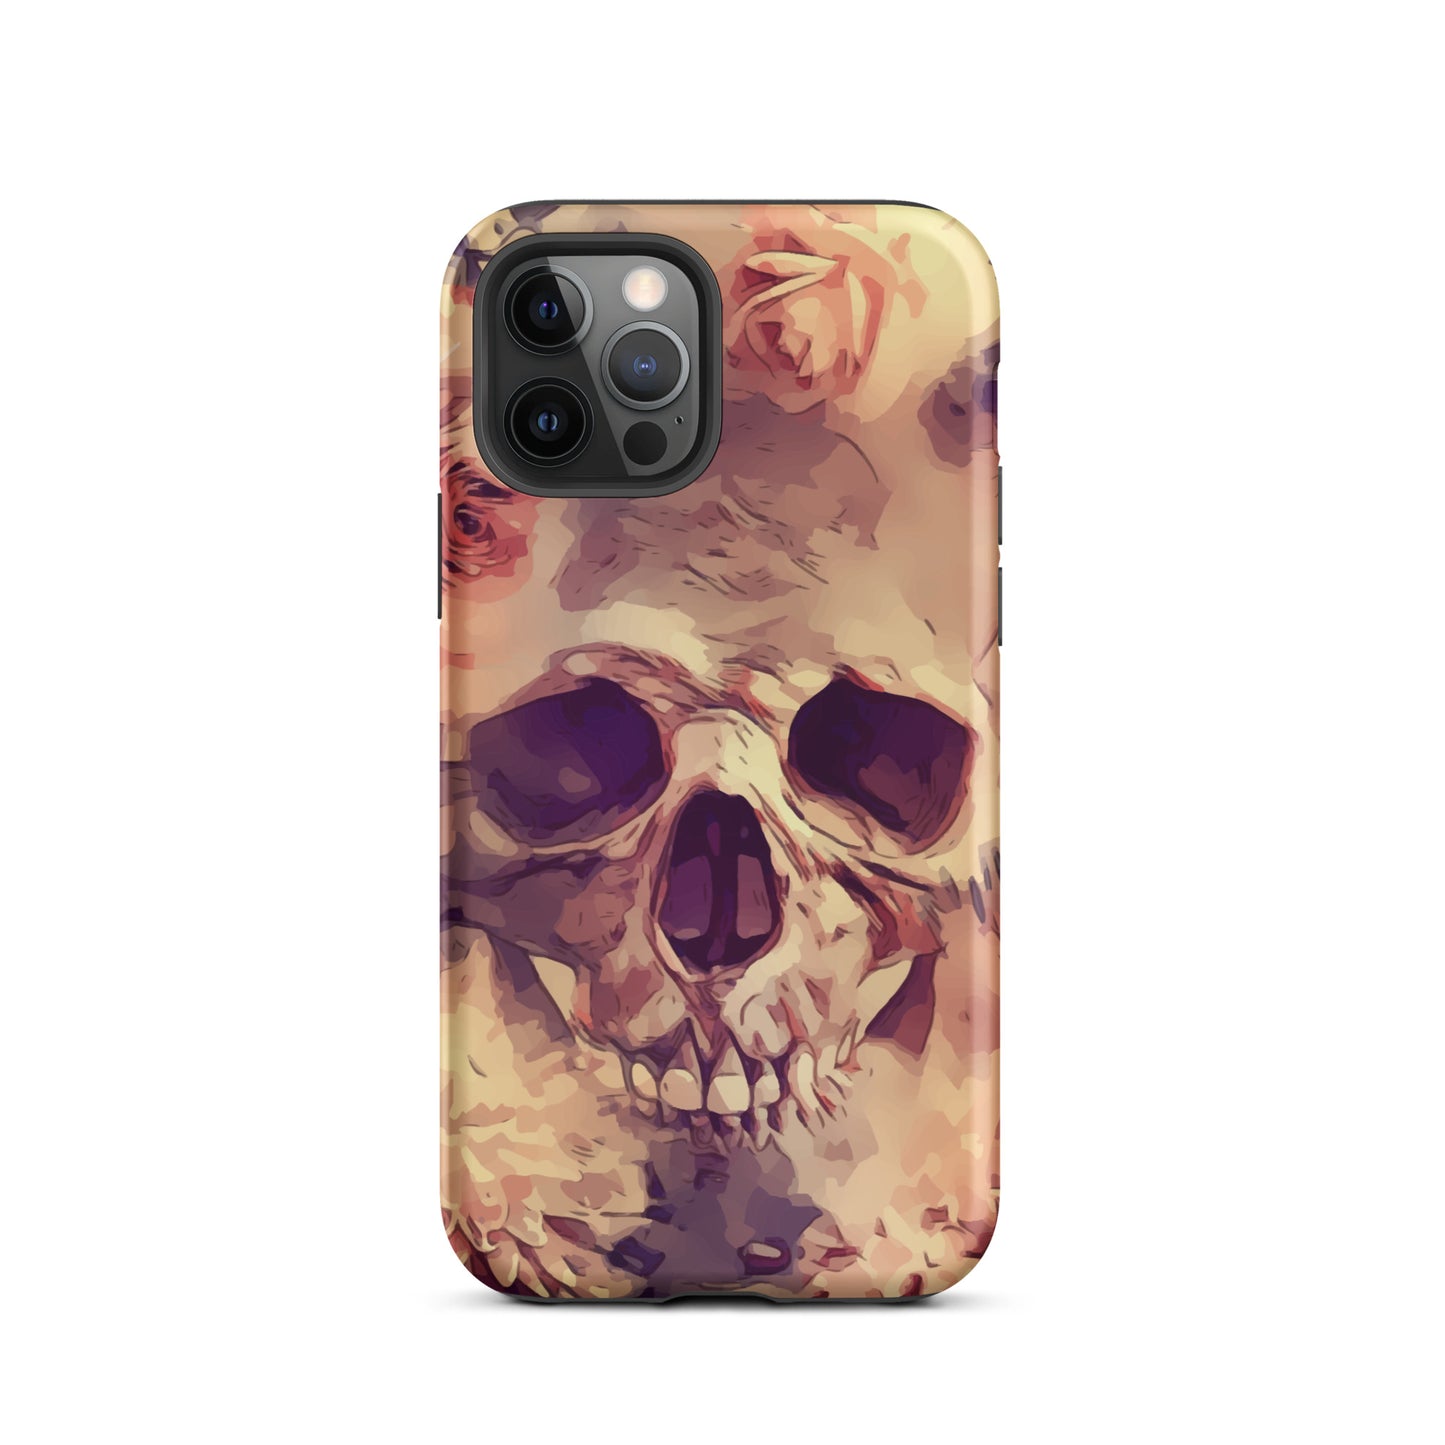 Skull iPhone case